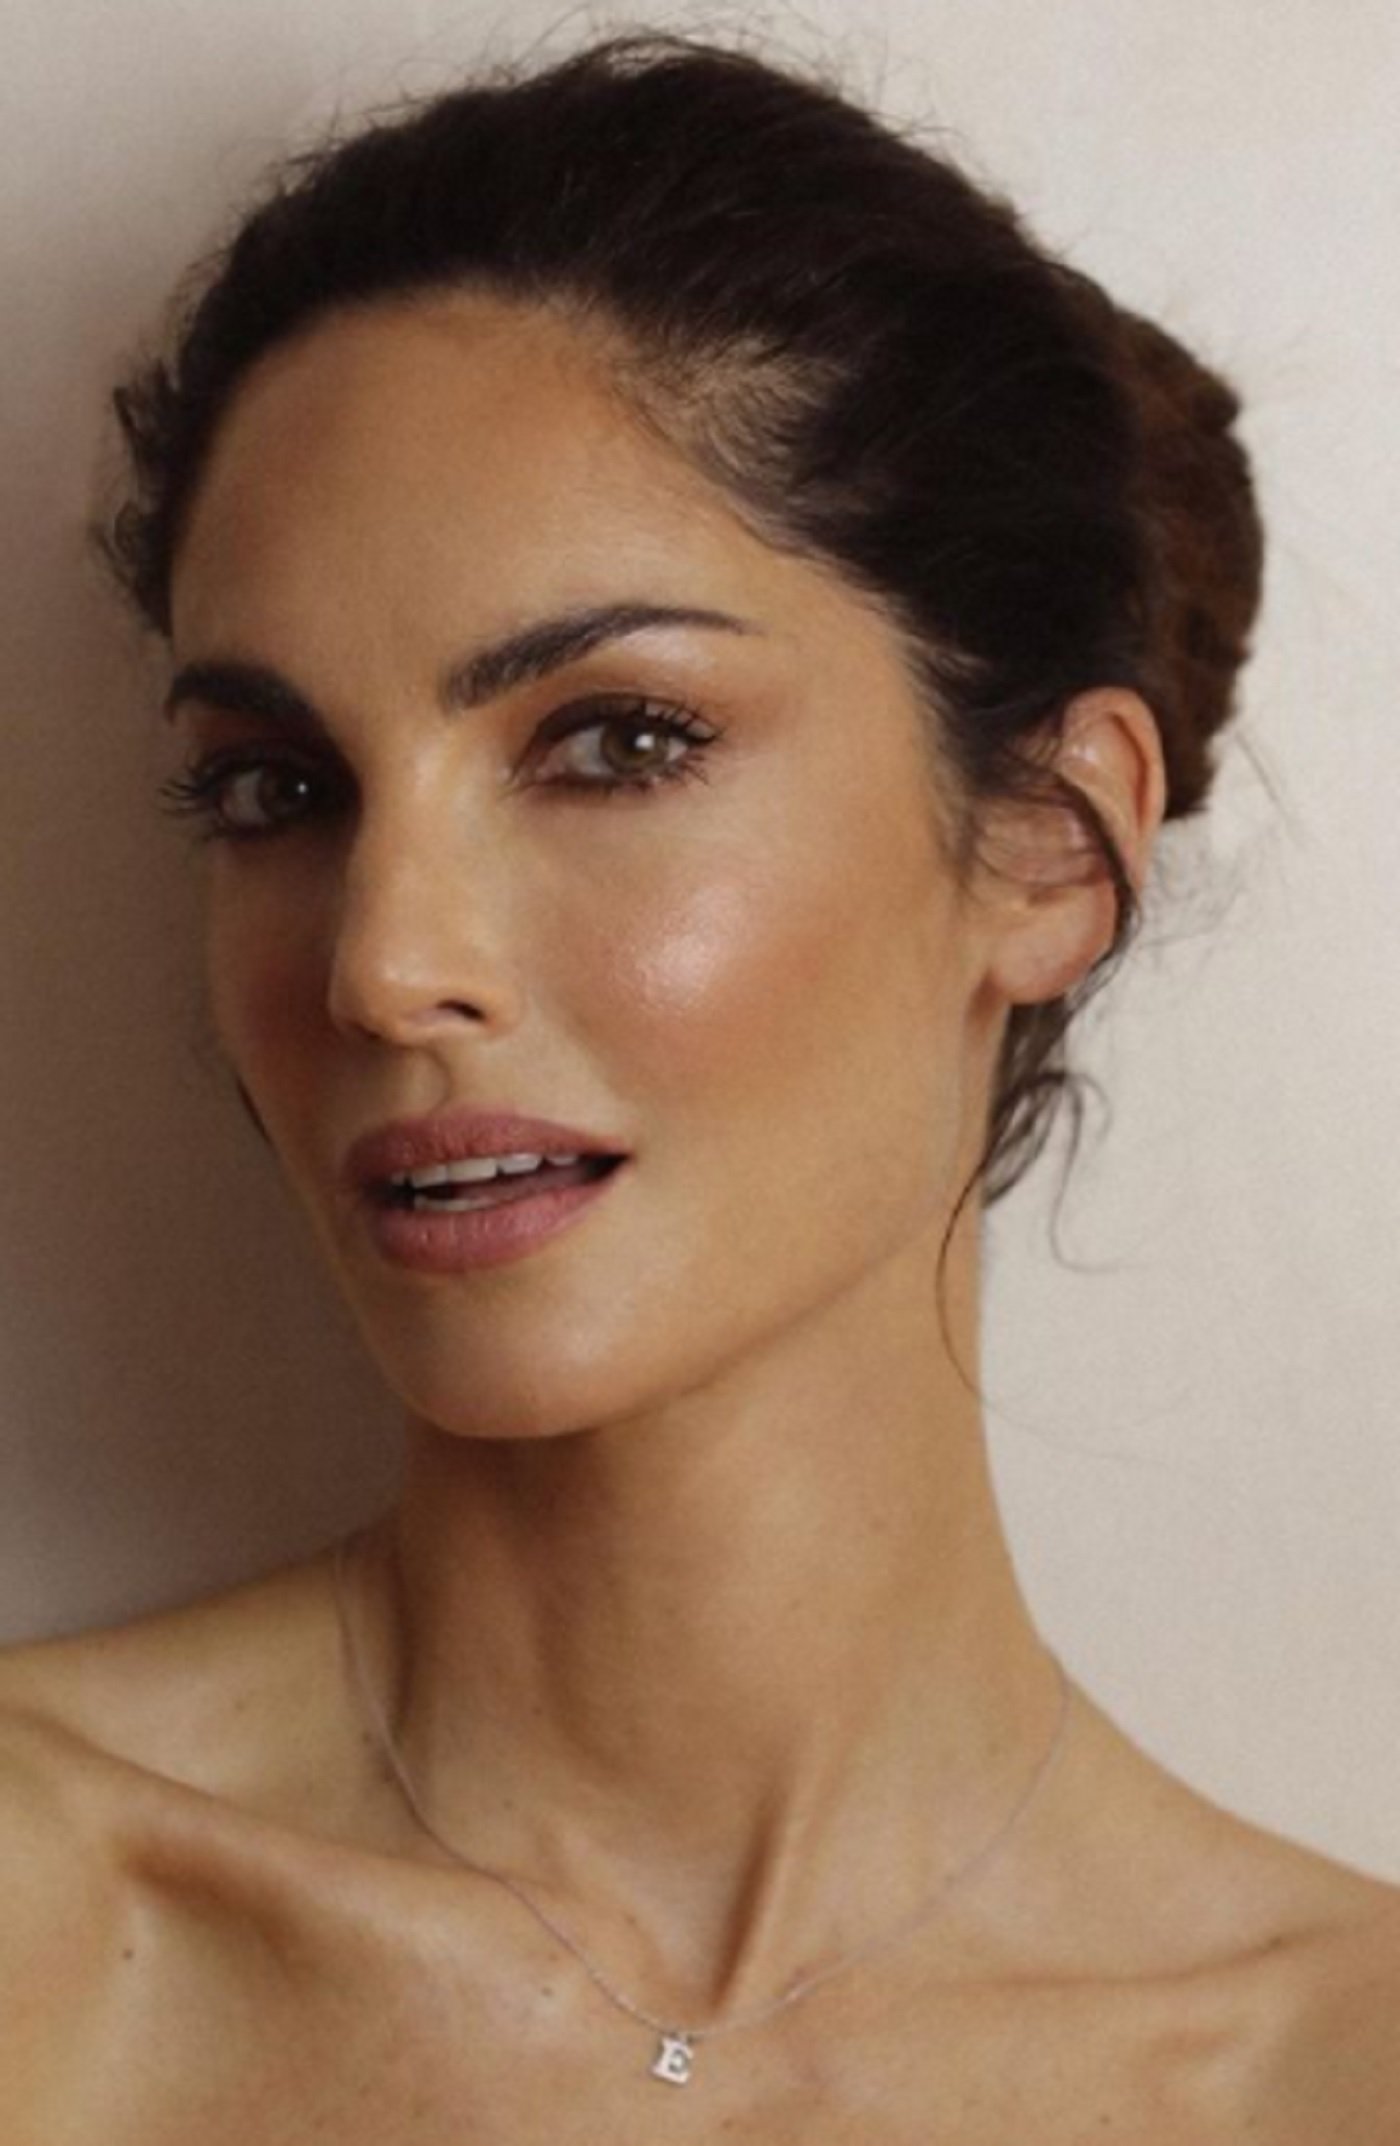 Espectacular toples de la modelo Eugenia Silva para celebrar su 45 cumpleaños